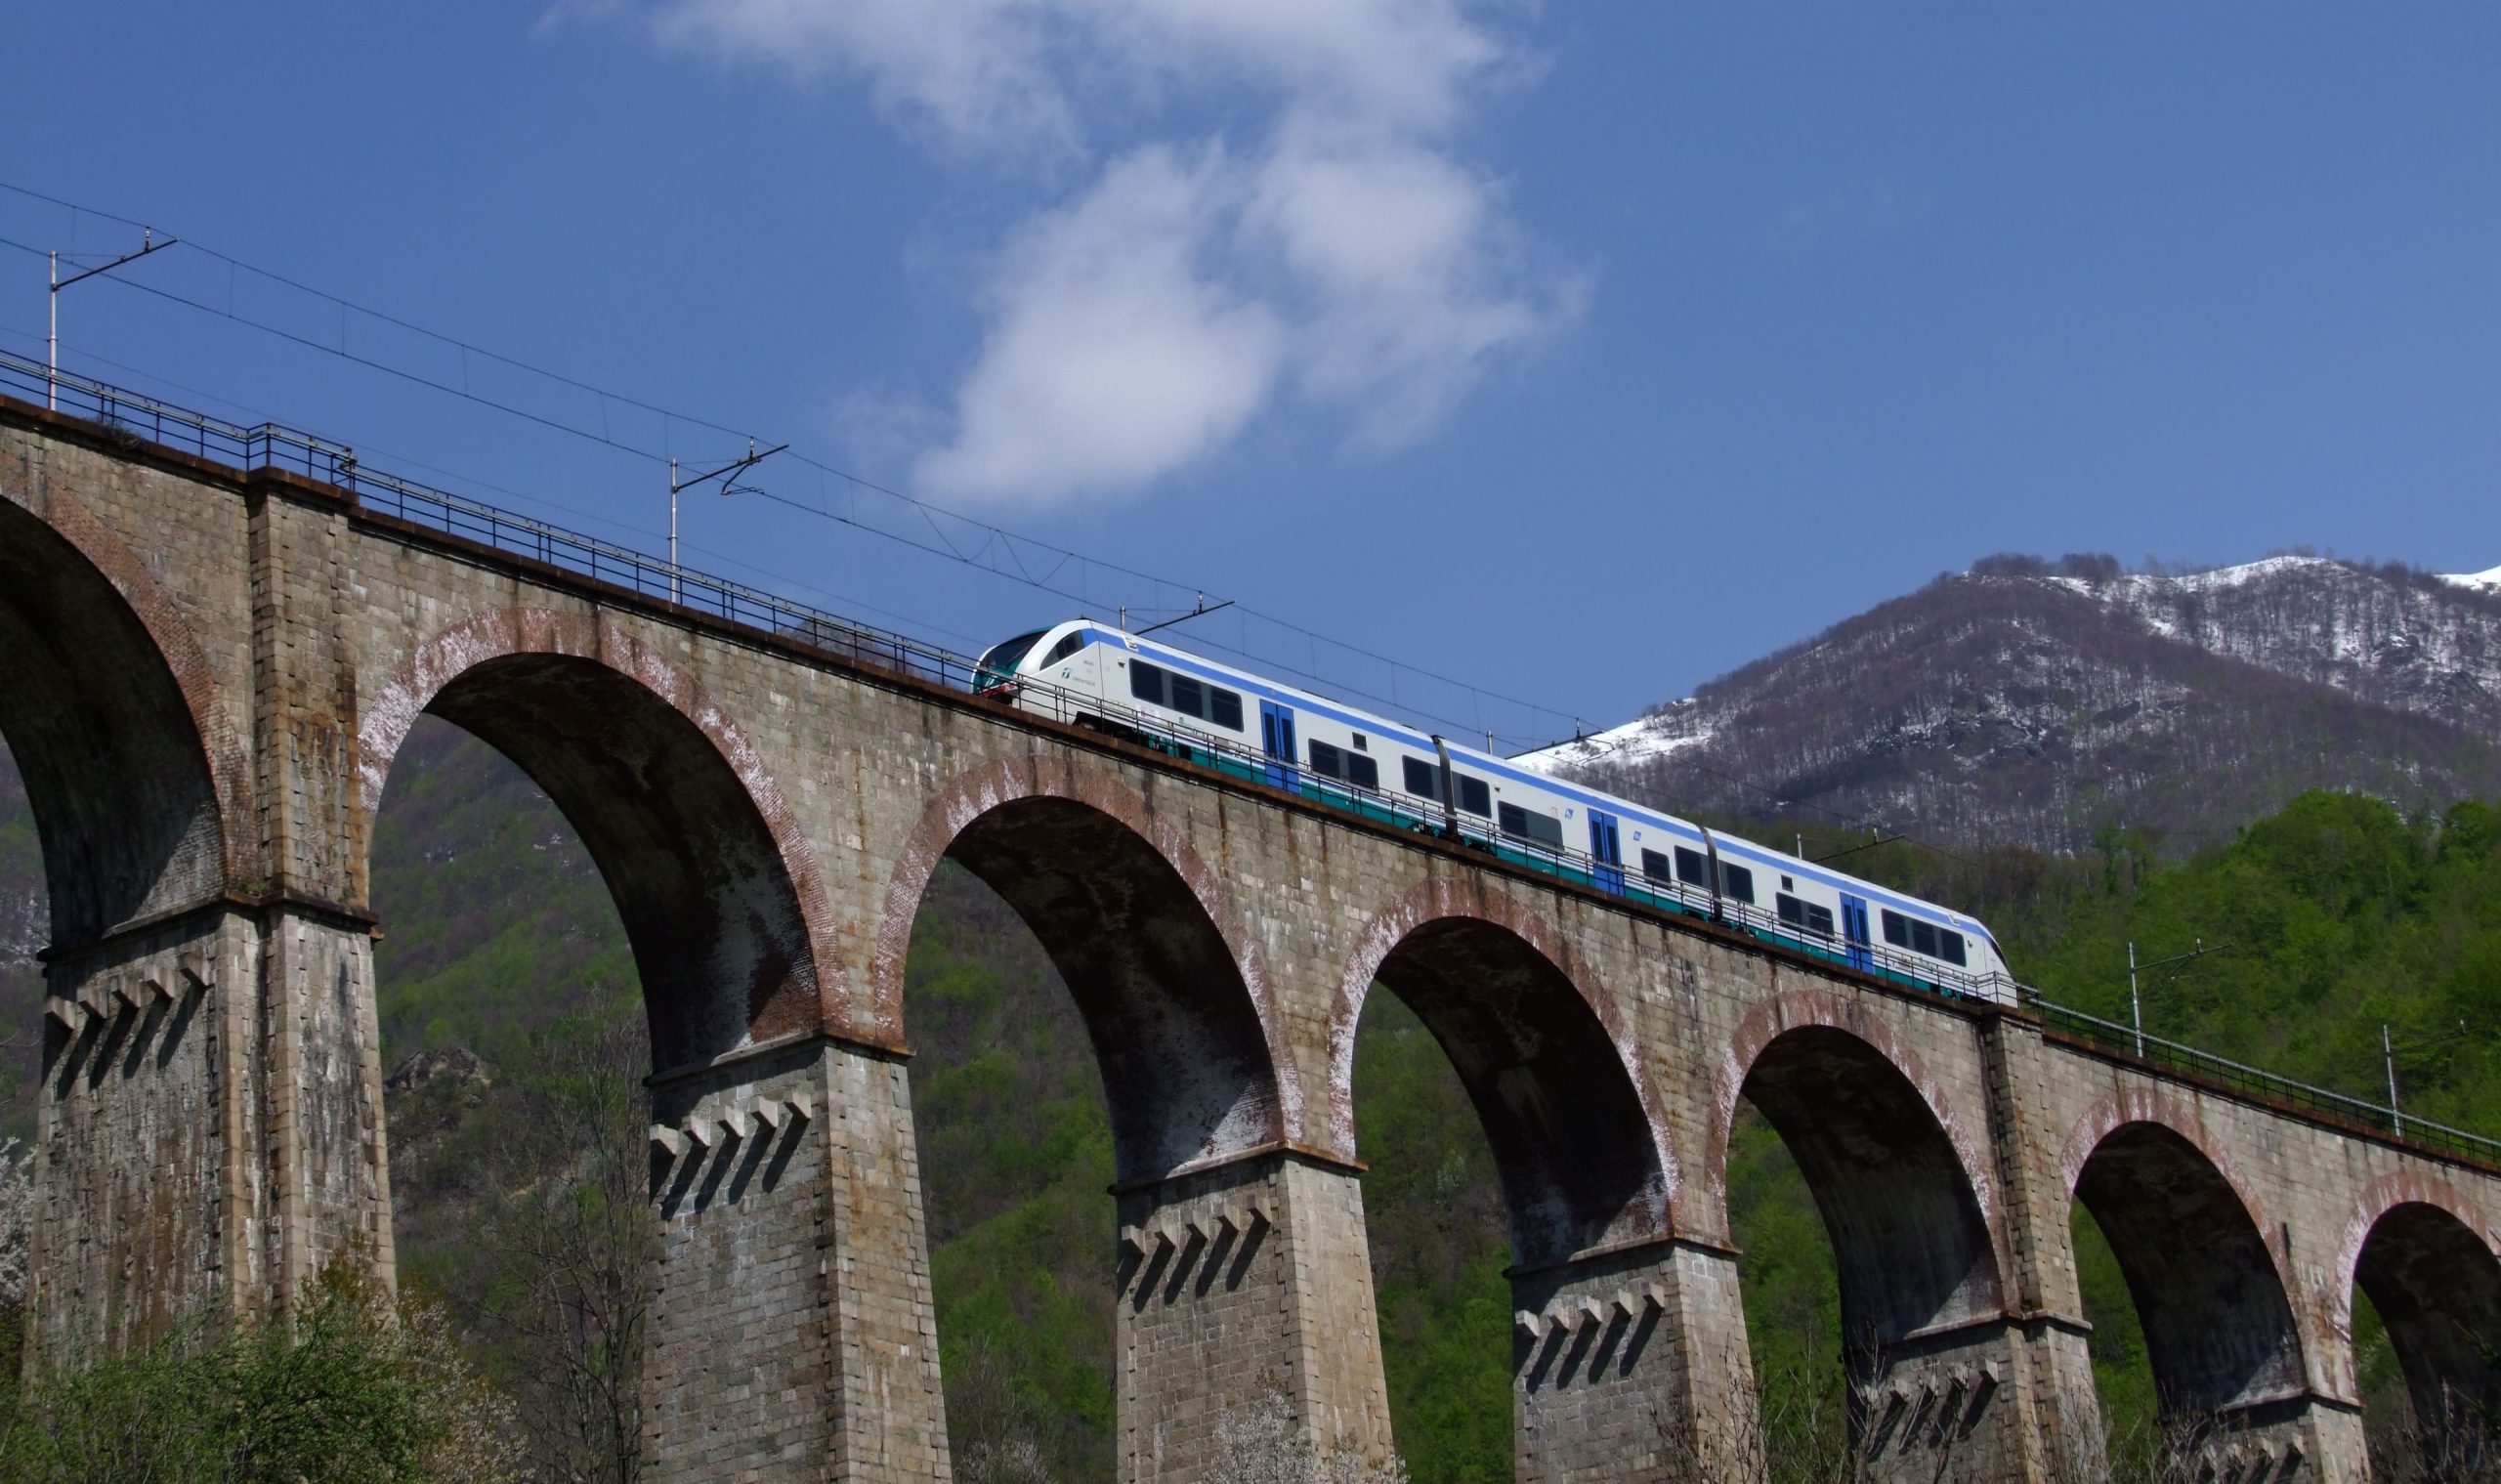 Nell'immagine un treno delle Ferrovie dello Stato sulla linea Cuneo-Ventimiglia mentre passa sul ponte Salet a Vernante.